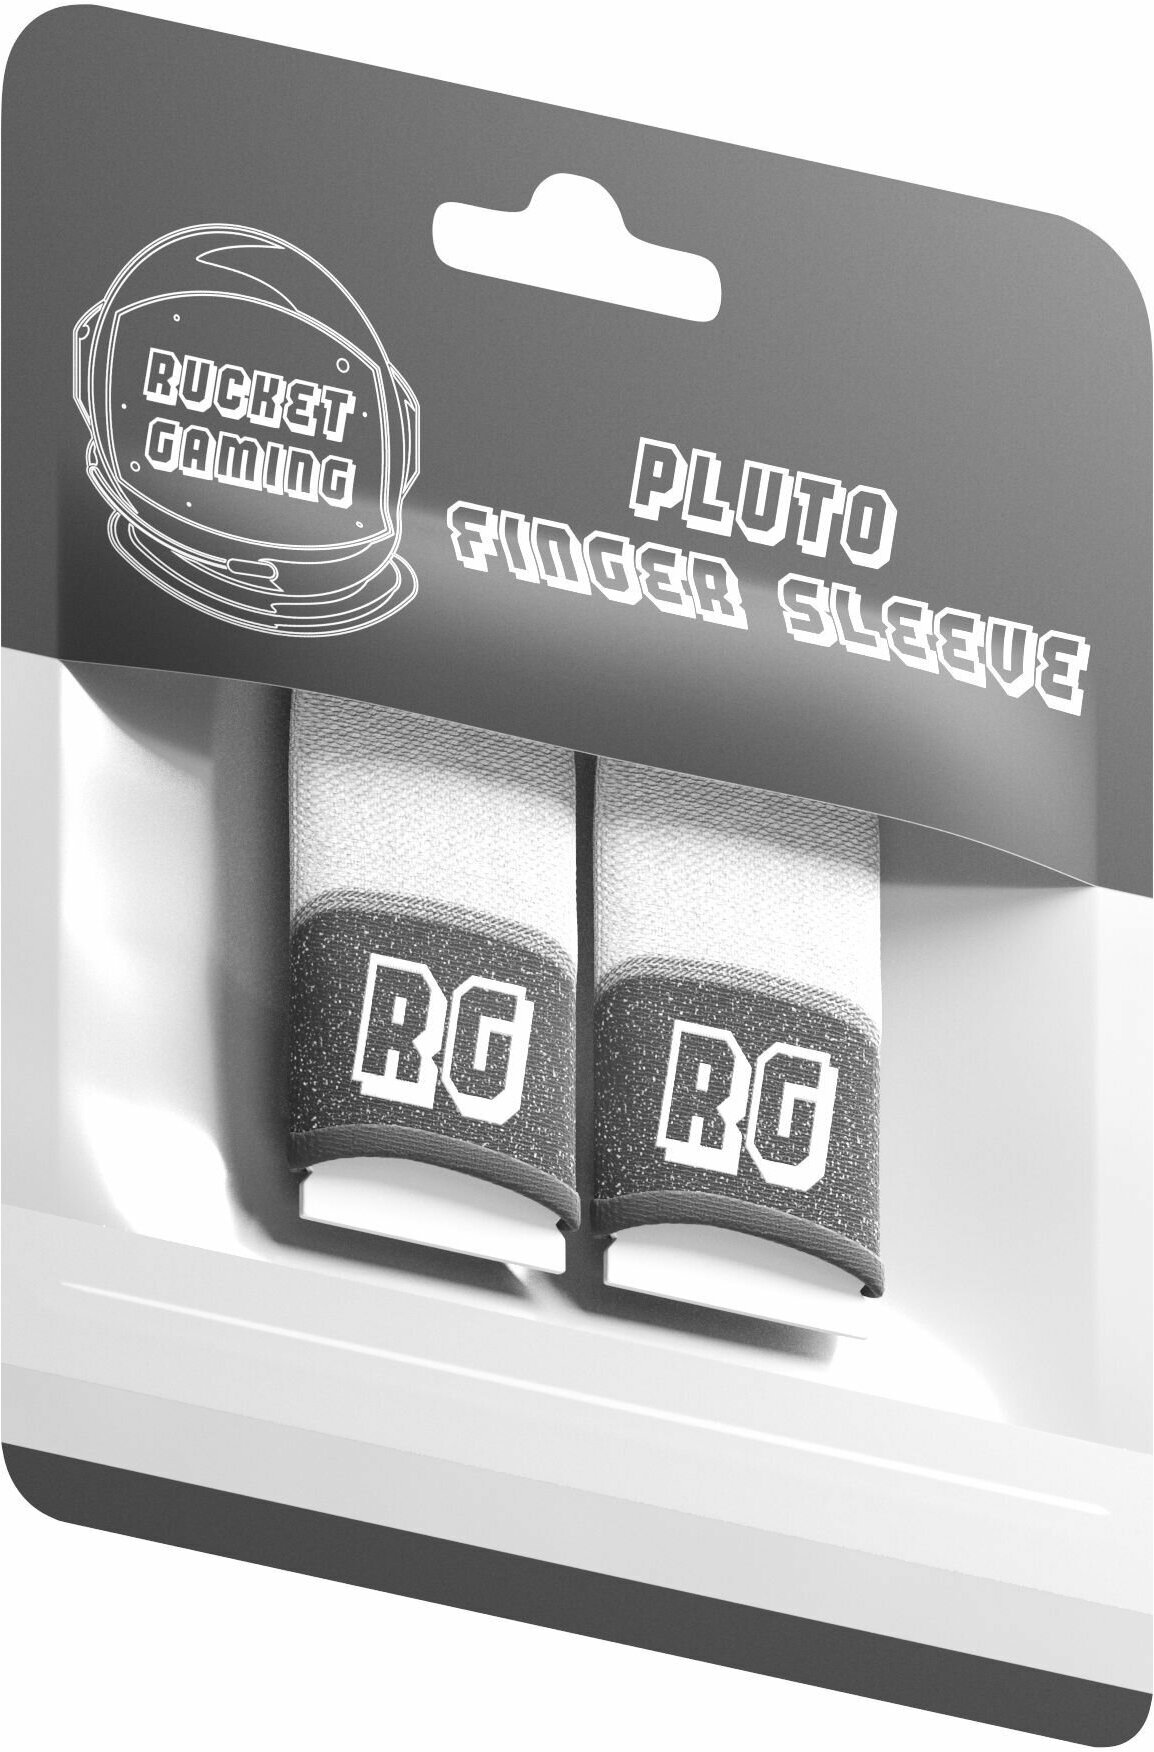 Сенсорные напальчники бесшовные геймерские PLUTO Joint by Rucket Gaming для игры в PUBG Mobile 2 шт.